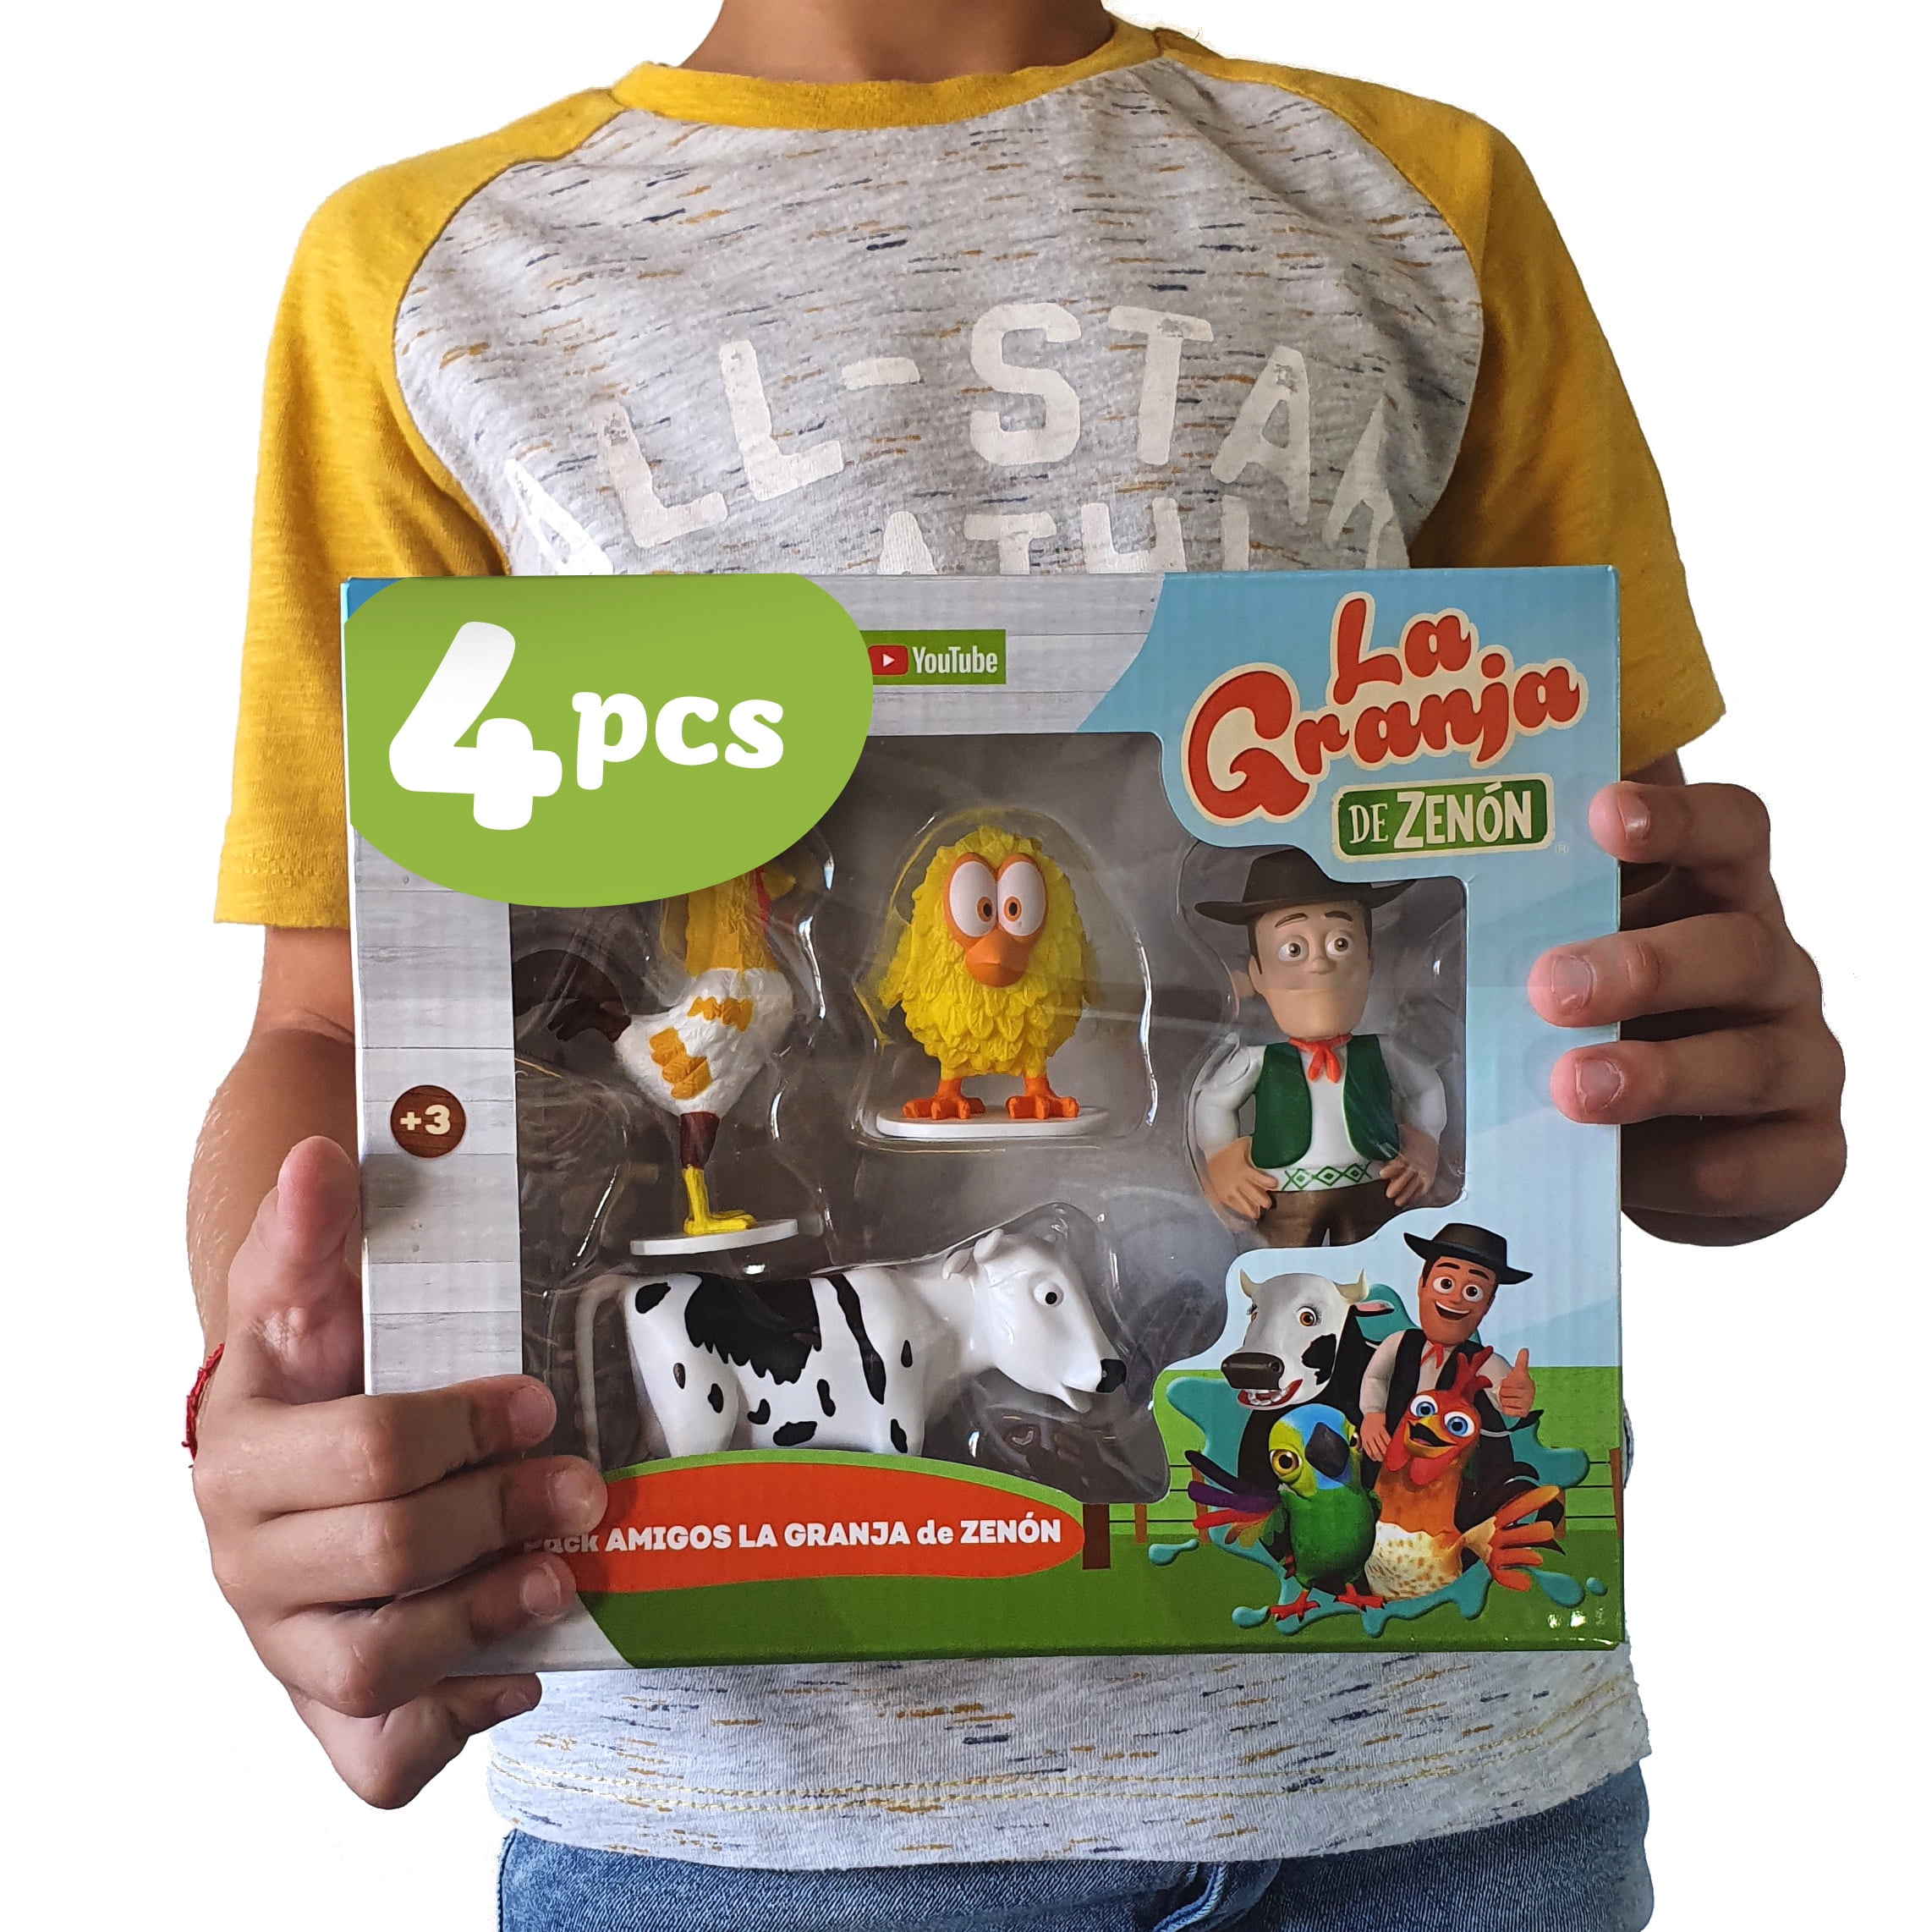 La Granja de Zenon Adventure Action Figures Set, 4 Collectible Action  Figures, Toys for Kids 